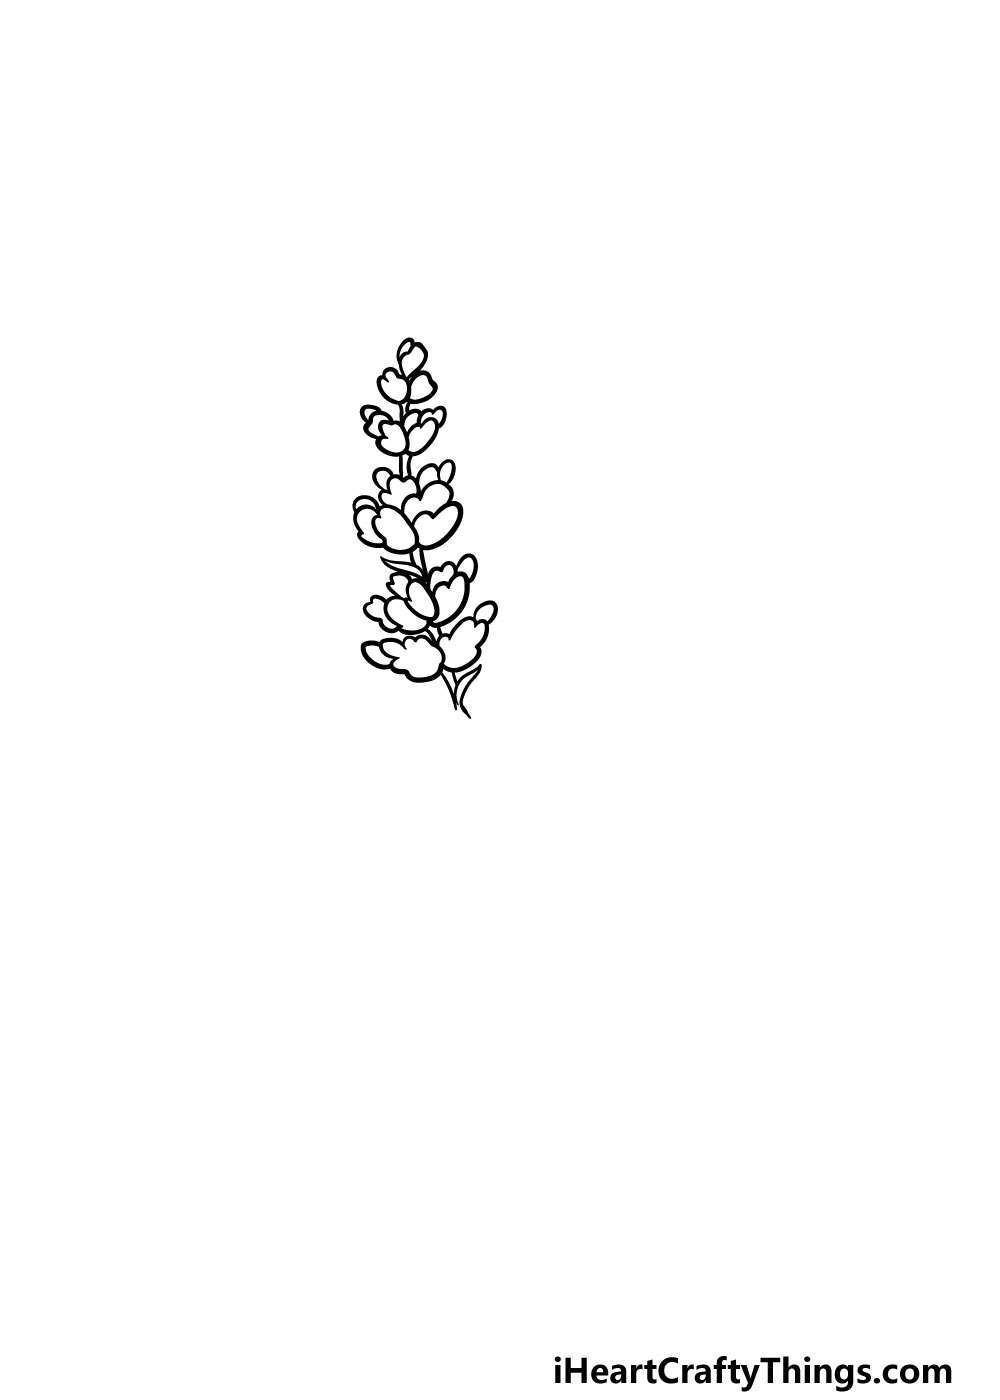 4 41 - Hướng dẫn kiểu vẽ hoa oải hương thơm rất đẹp giản dị với 6 bước cơ bản